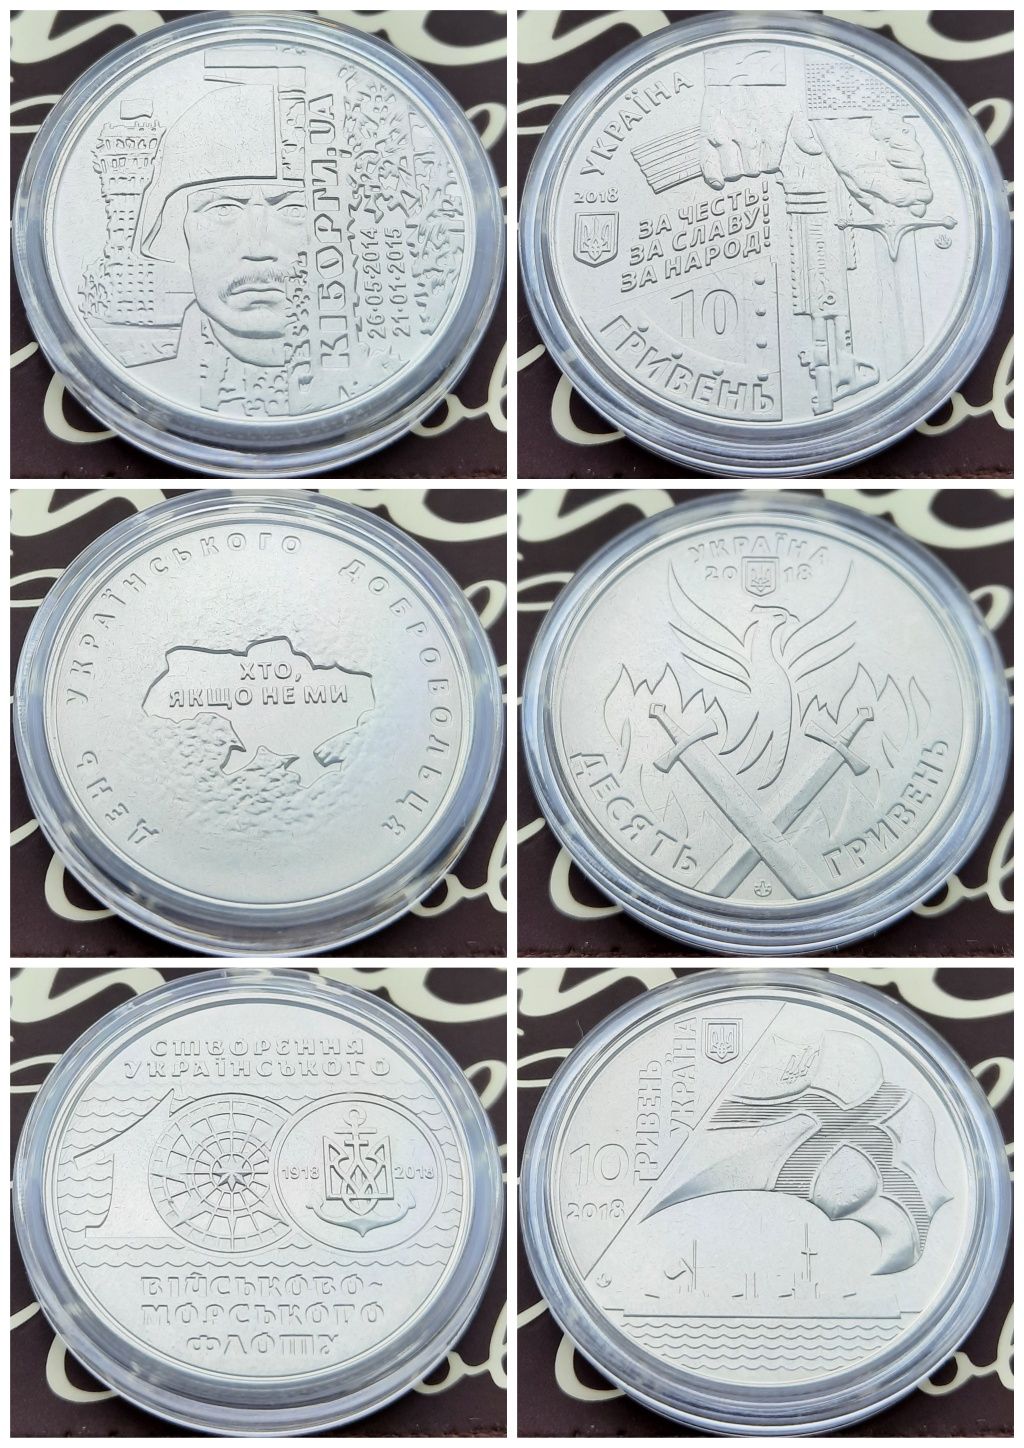 Монети на тему ЗСУ 2018 року (Кіборги, 100 років флоту, Добровольці)